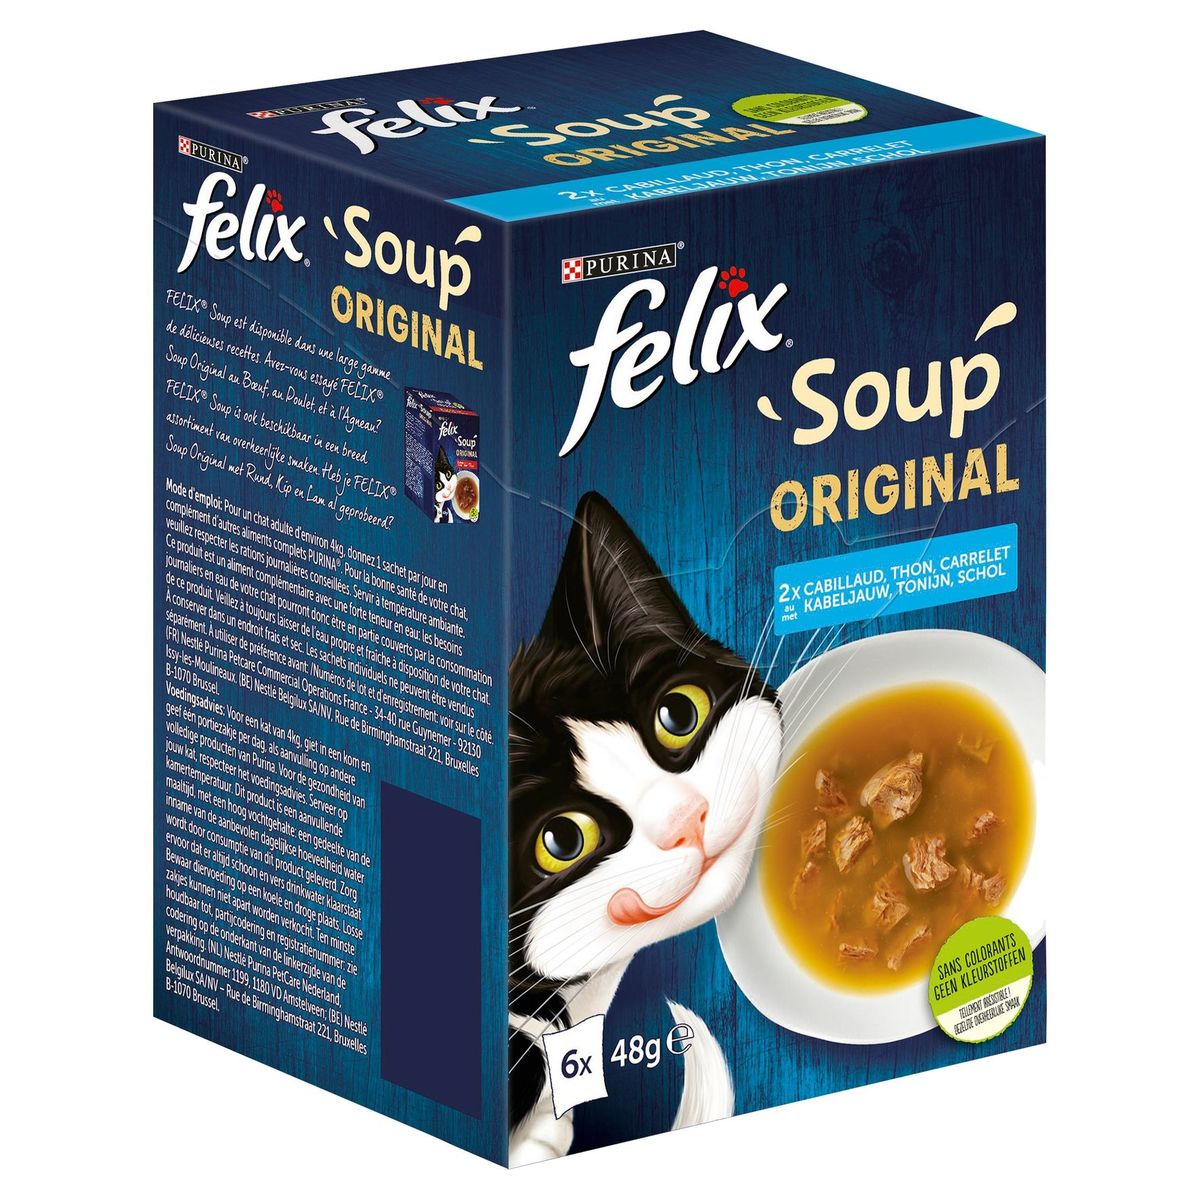 Felix Chat Soup Sélection de Poissons 6 x 48 g